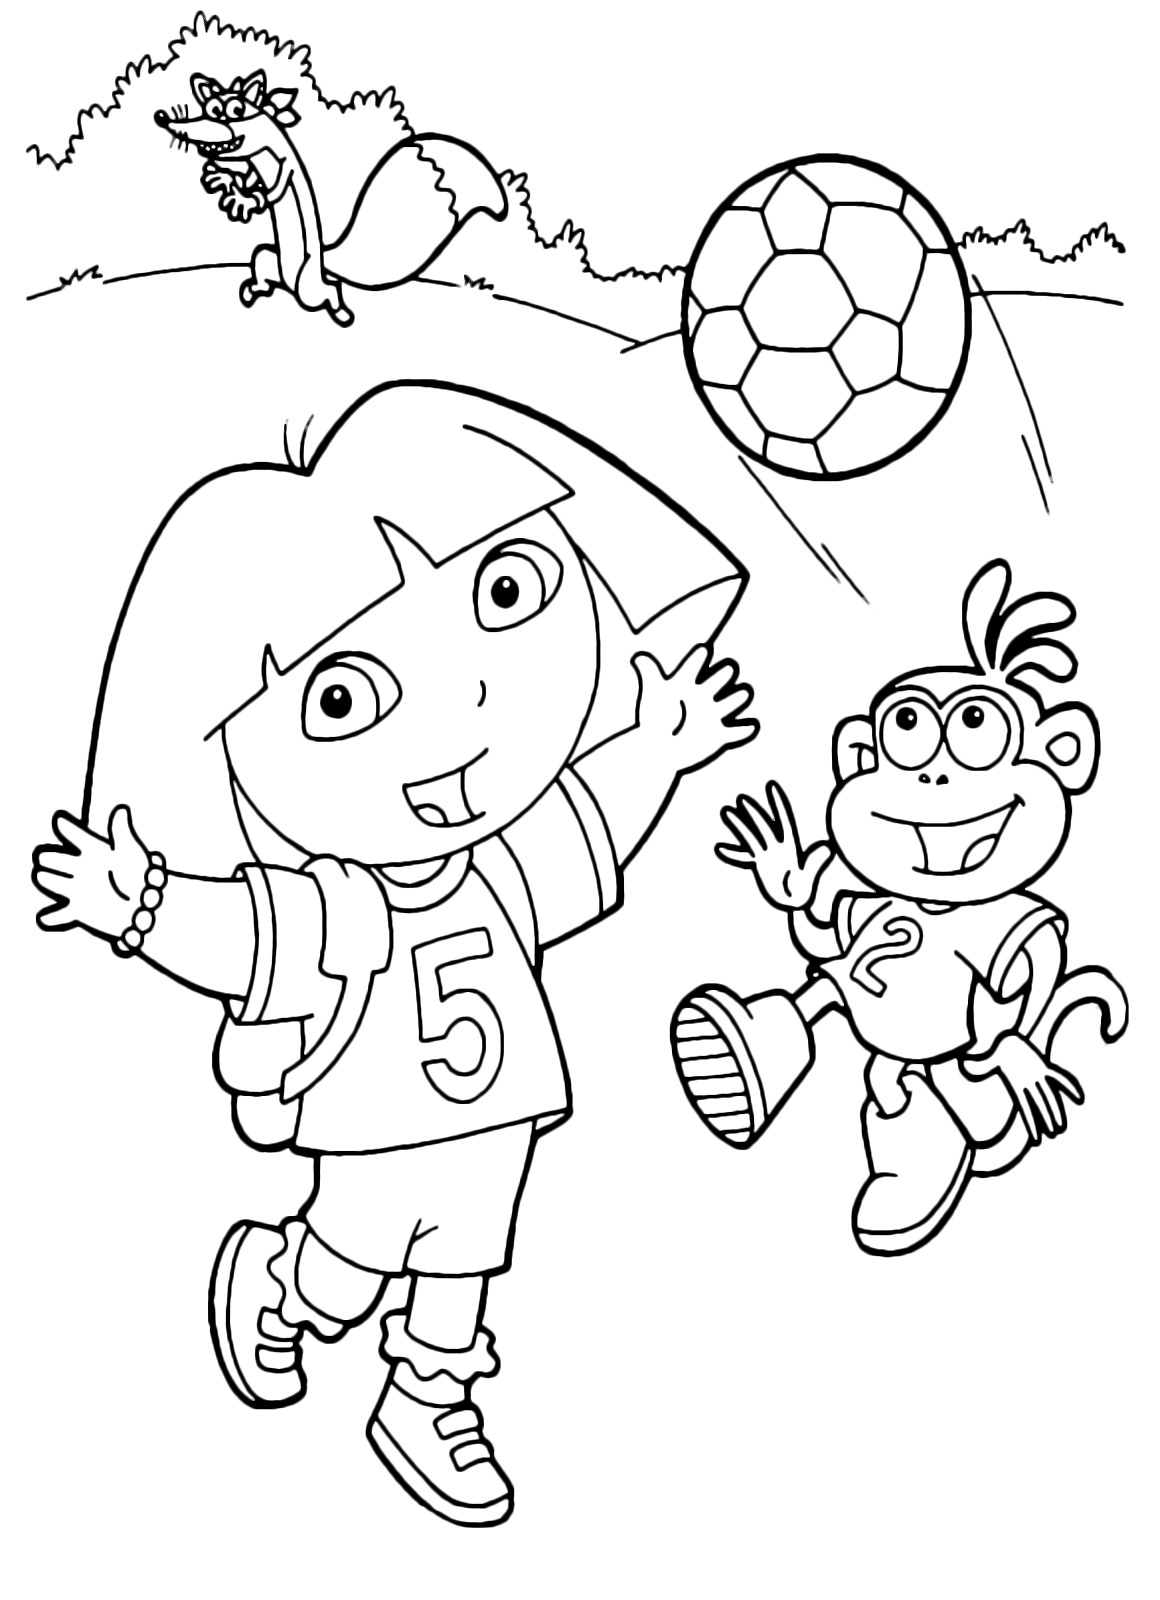 Dora l'esploratrice - Dora e Boots giocano a pallone